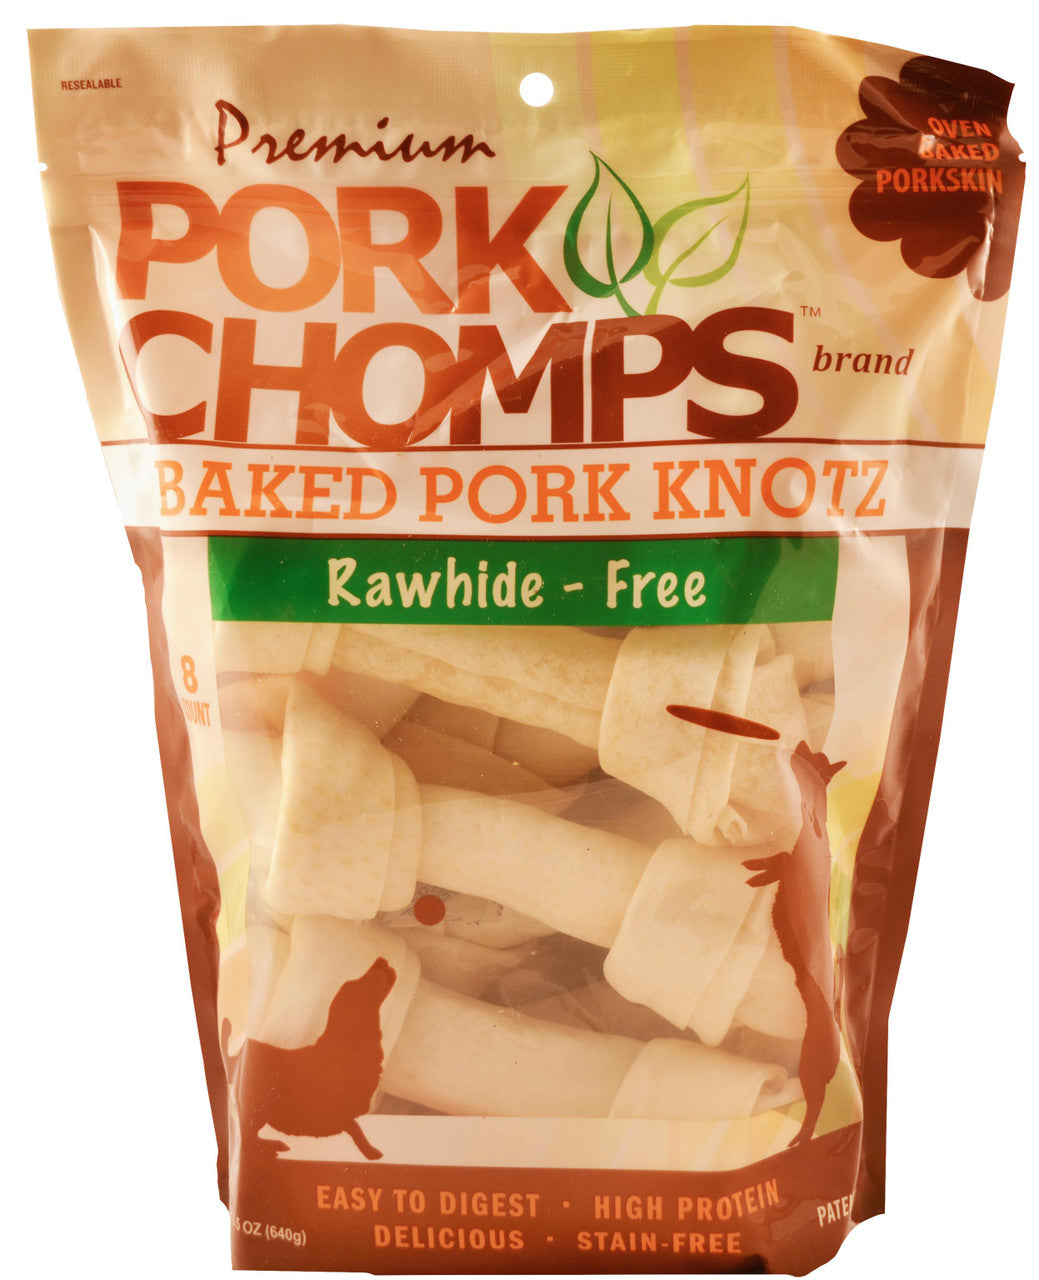 Pork Chomps Premium Pork Chomp Knot oz 8 ct 015958978875